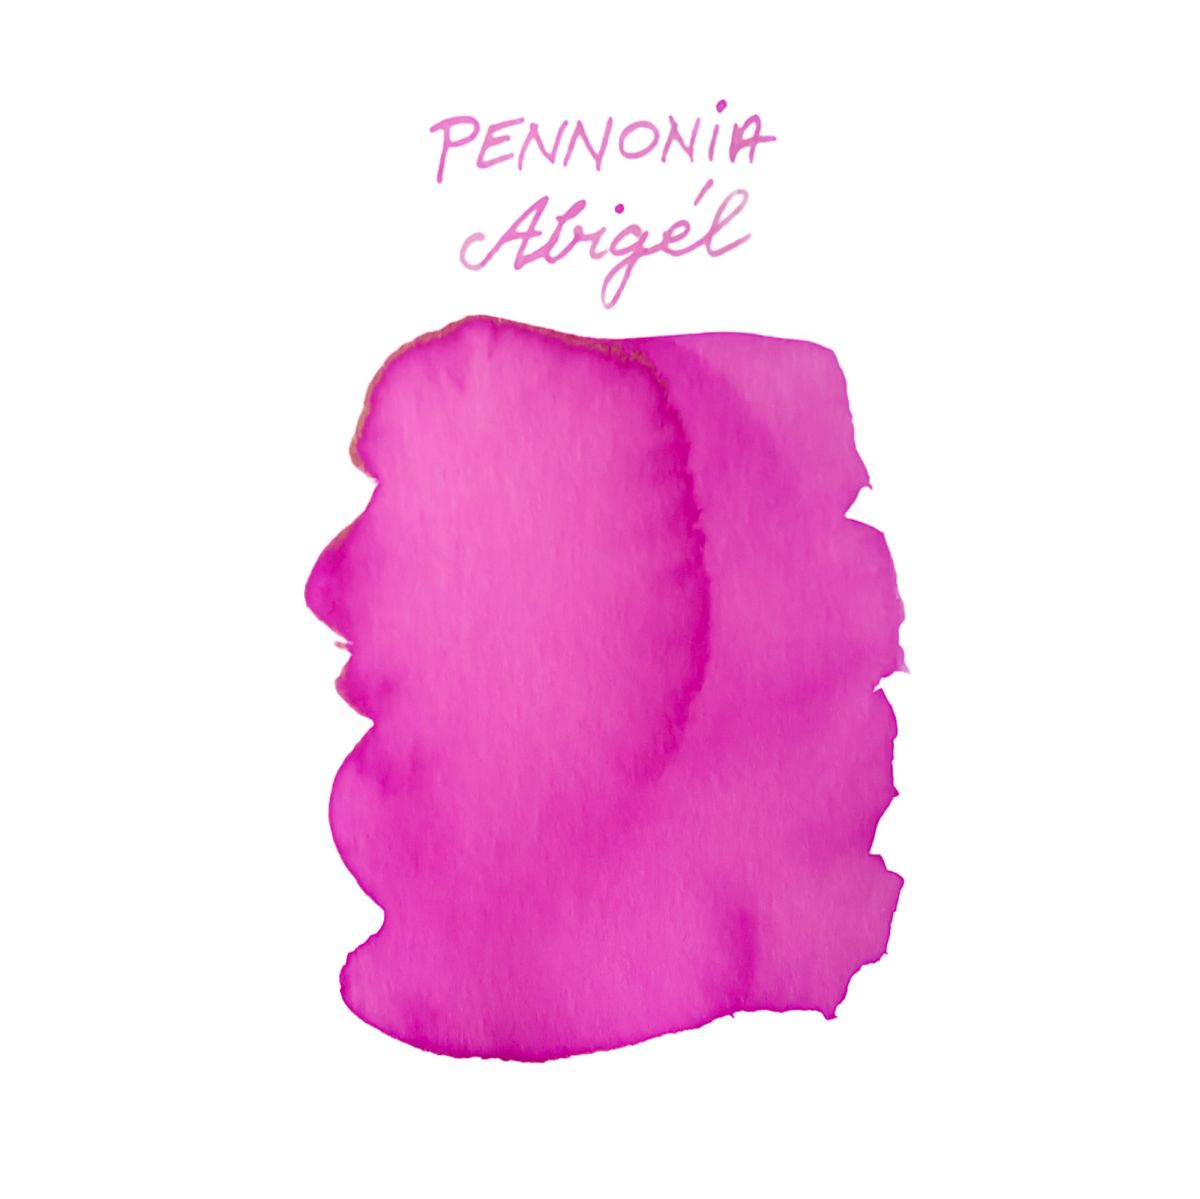 Pennonia Abigel